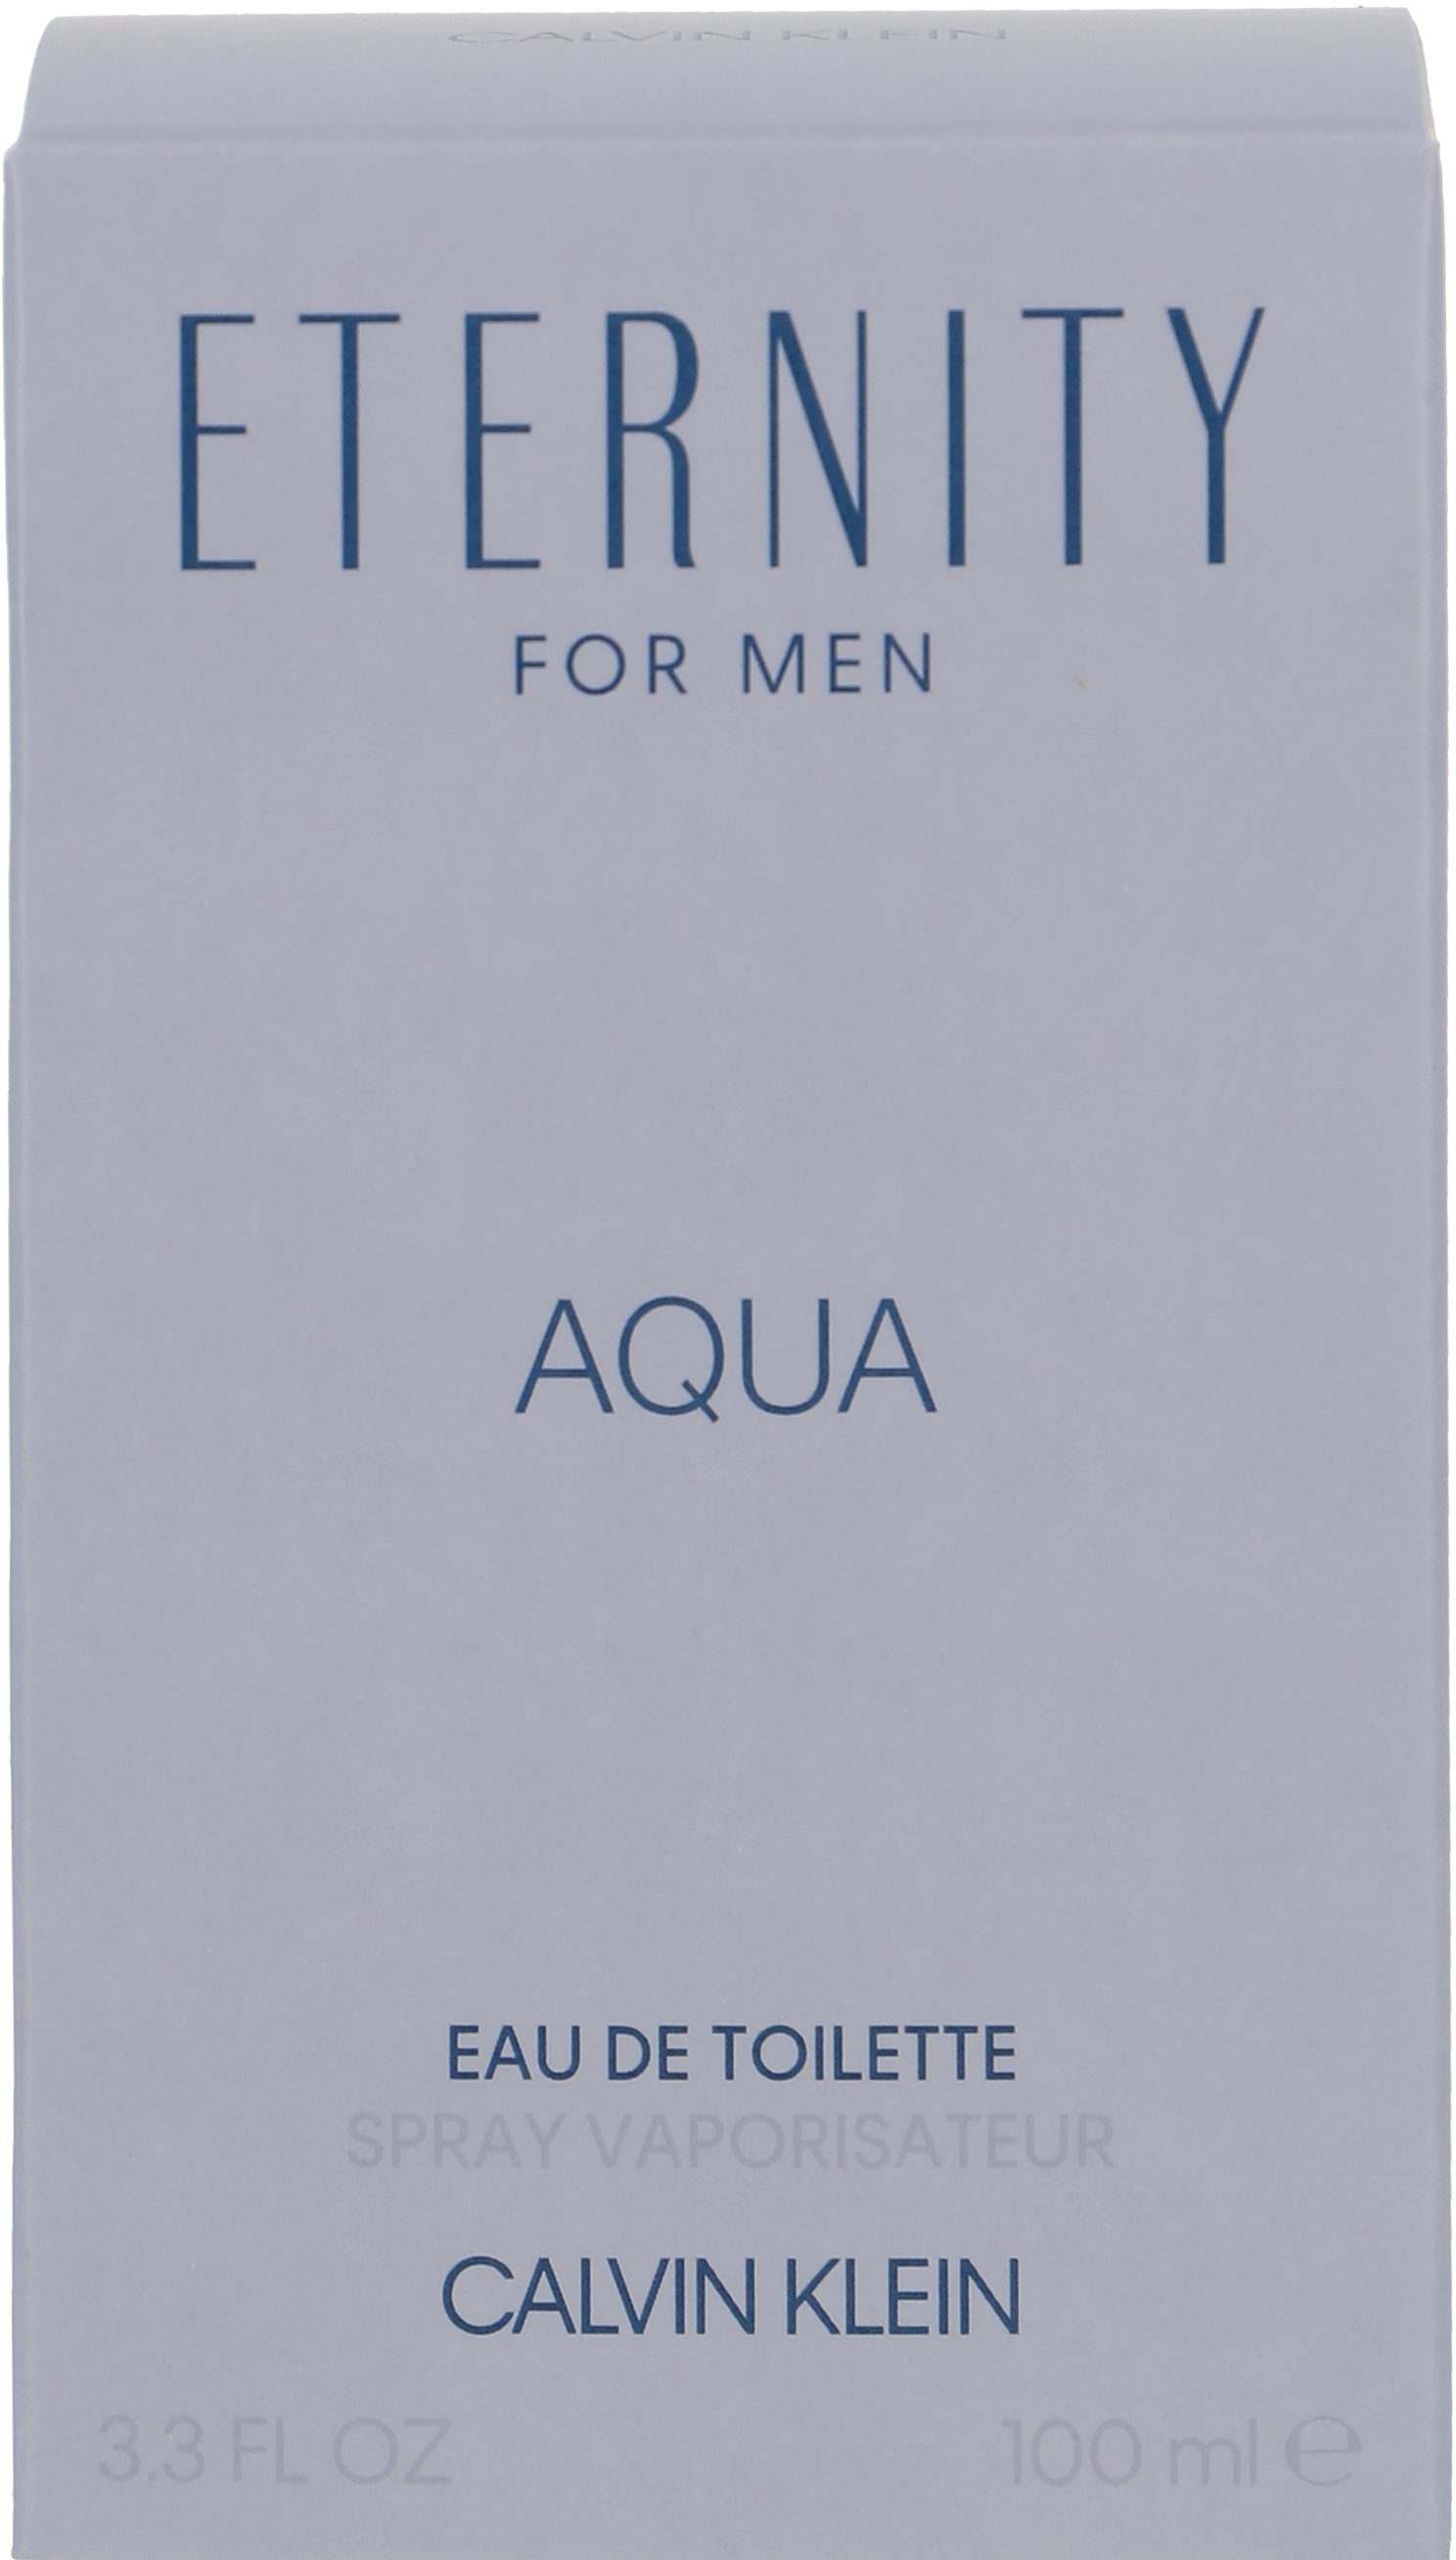 Eau Men Eternity Toilette Aqua KLEIN Klein de Calvin CALVIN